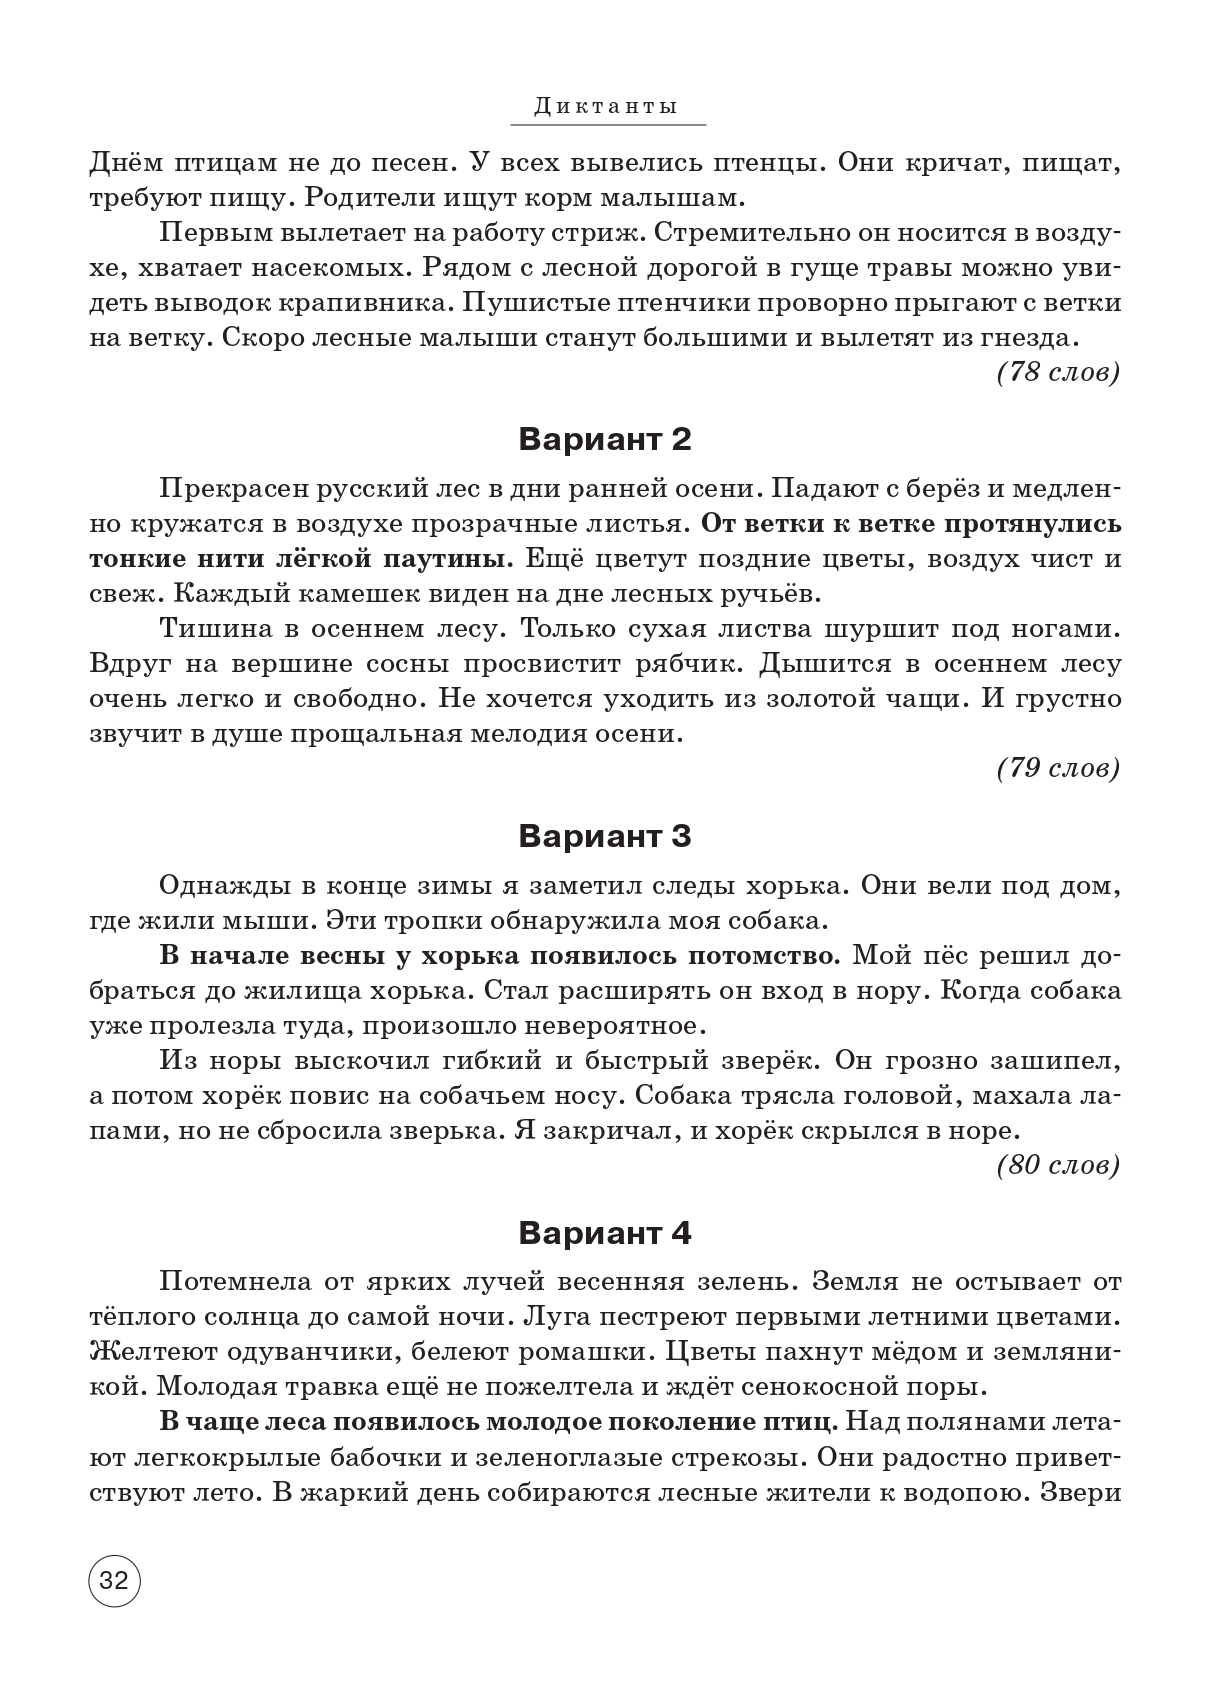 Русский язык. ВПР. 4-й класс. 10 тренировочных вариантов. Изд. 4-е.